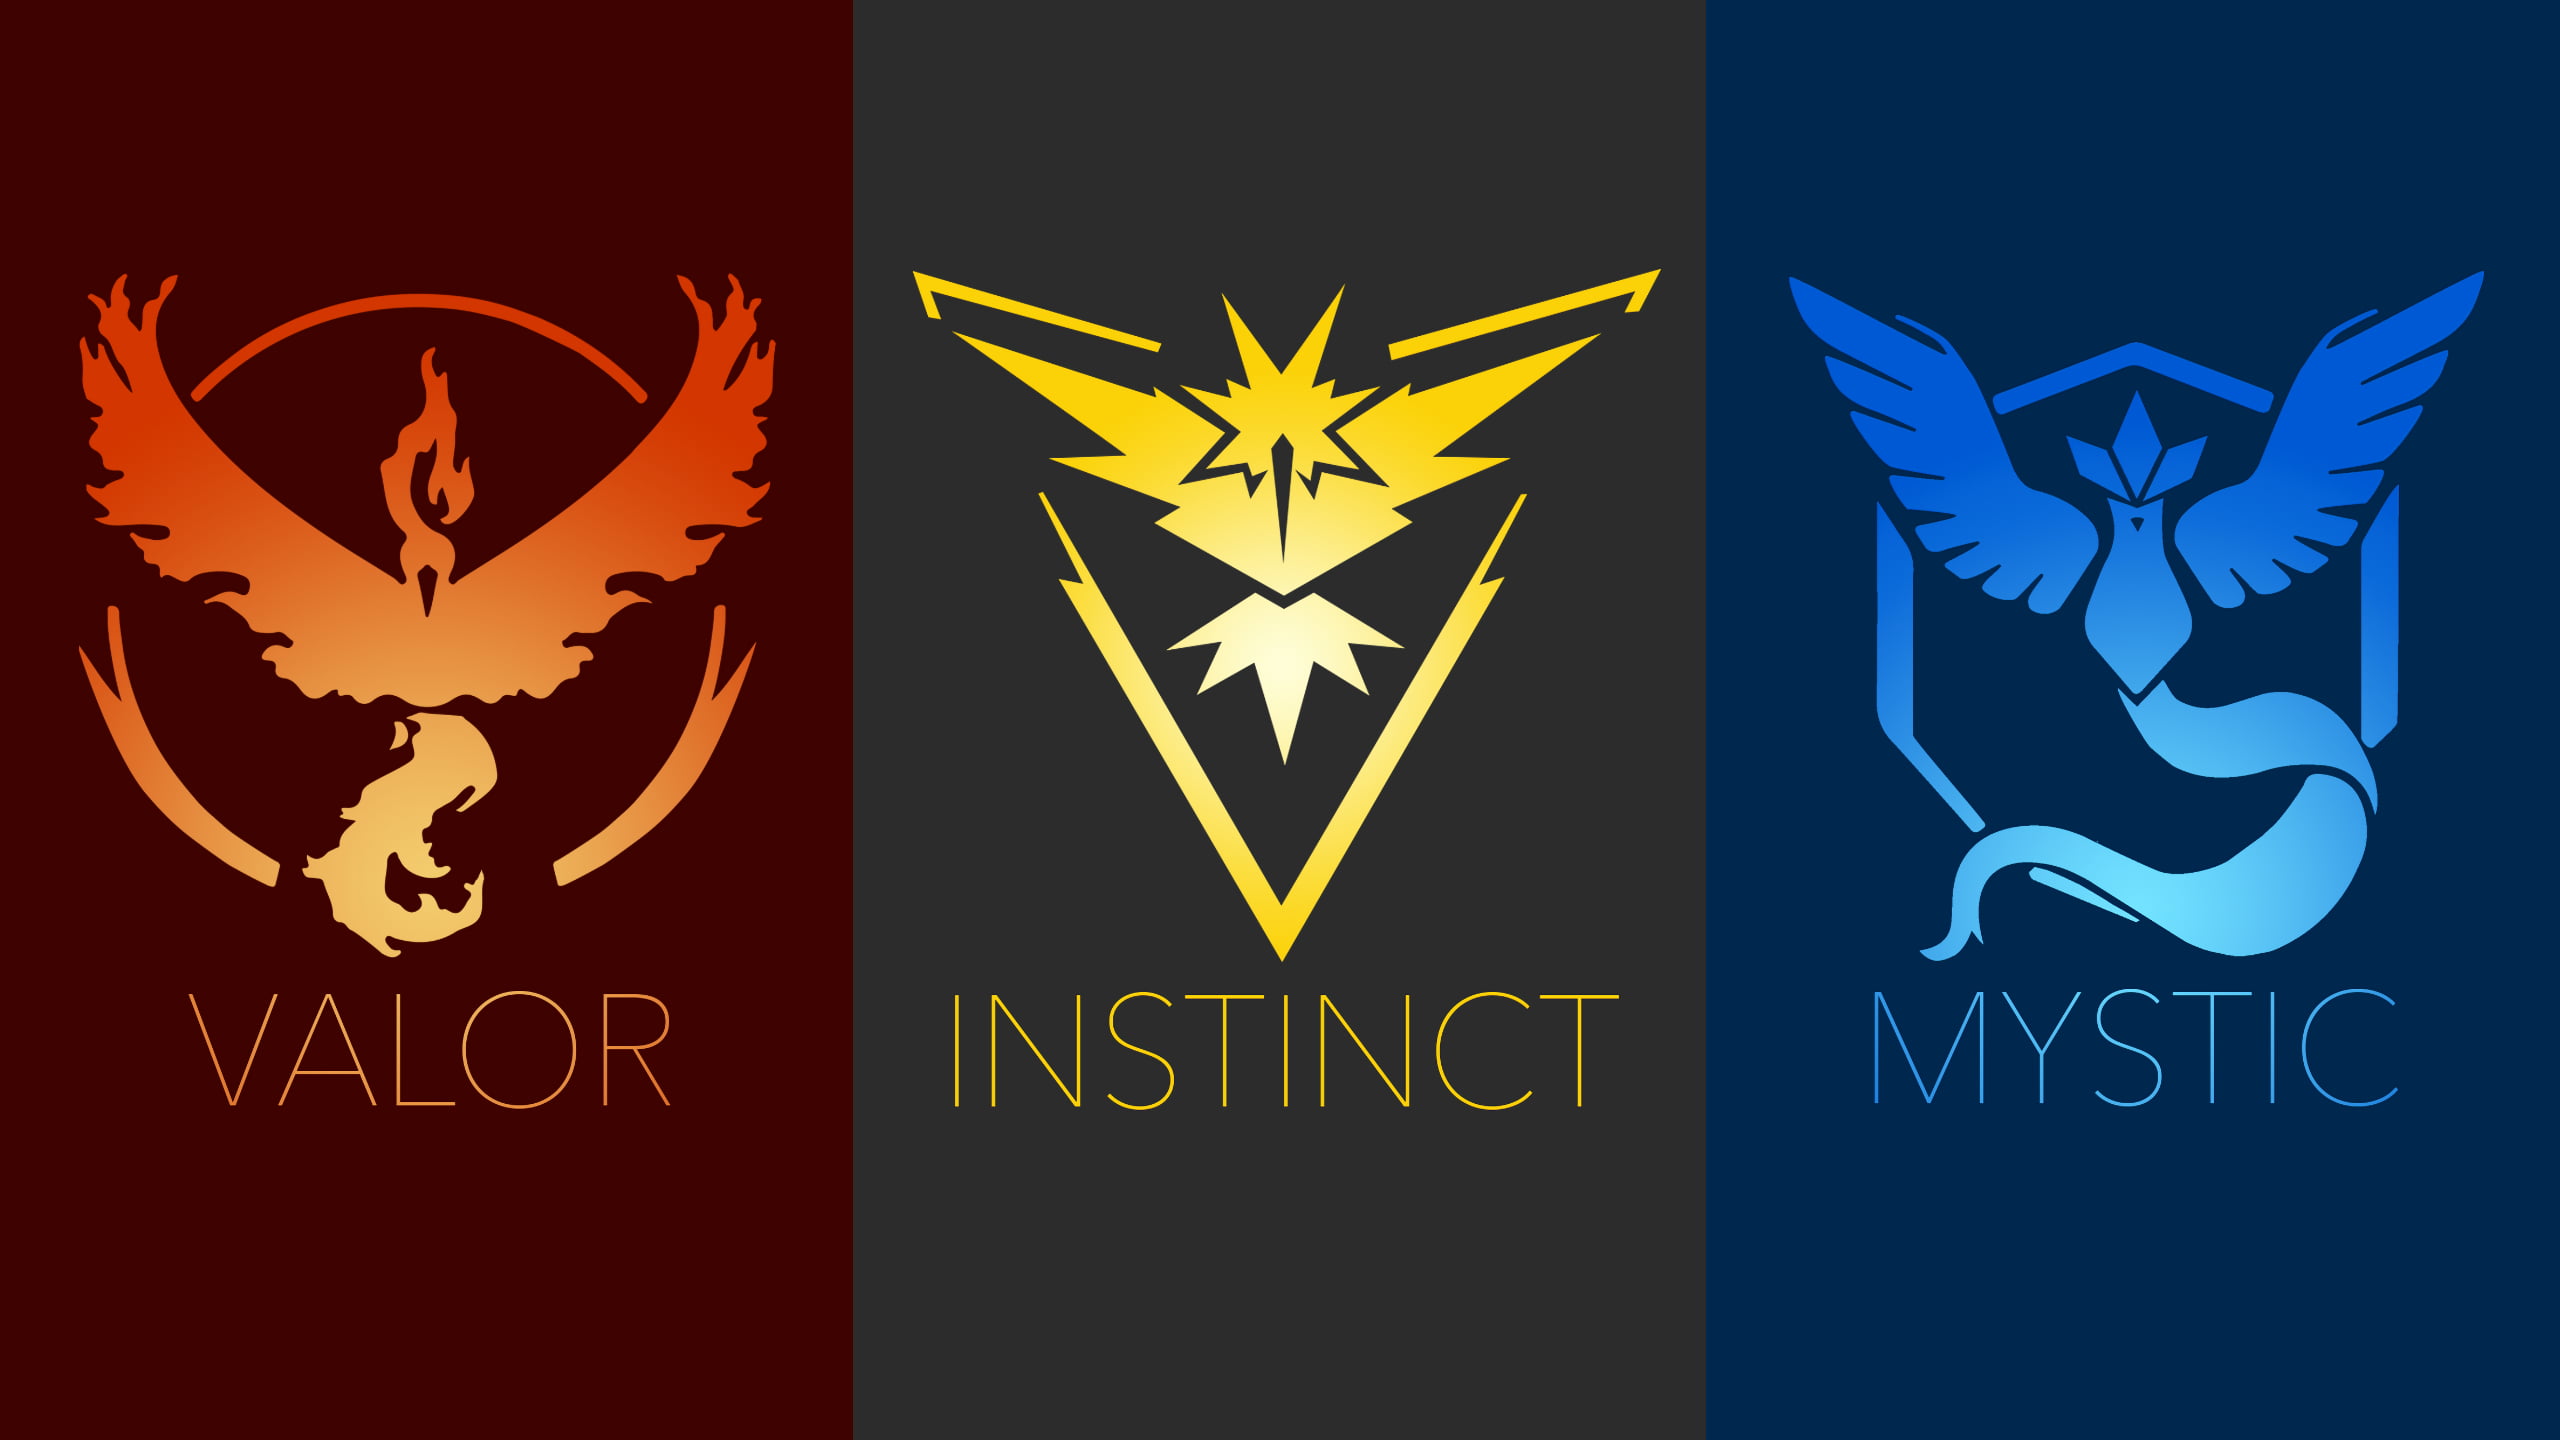 Valor, Instinct, and Mystic signage